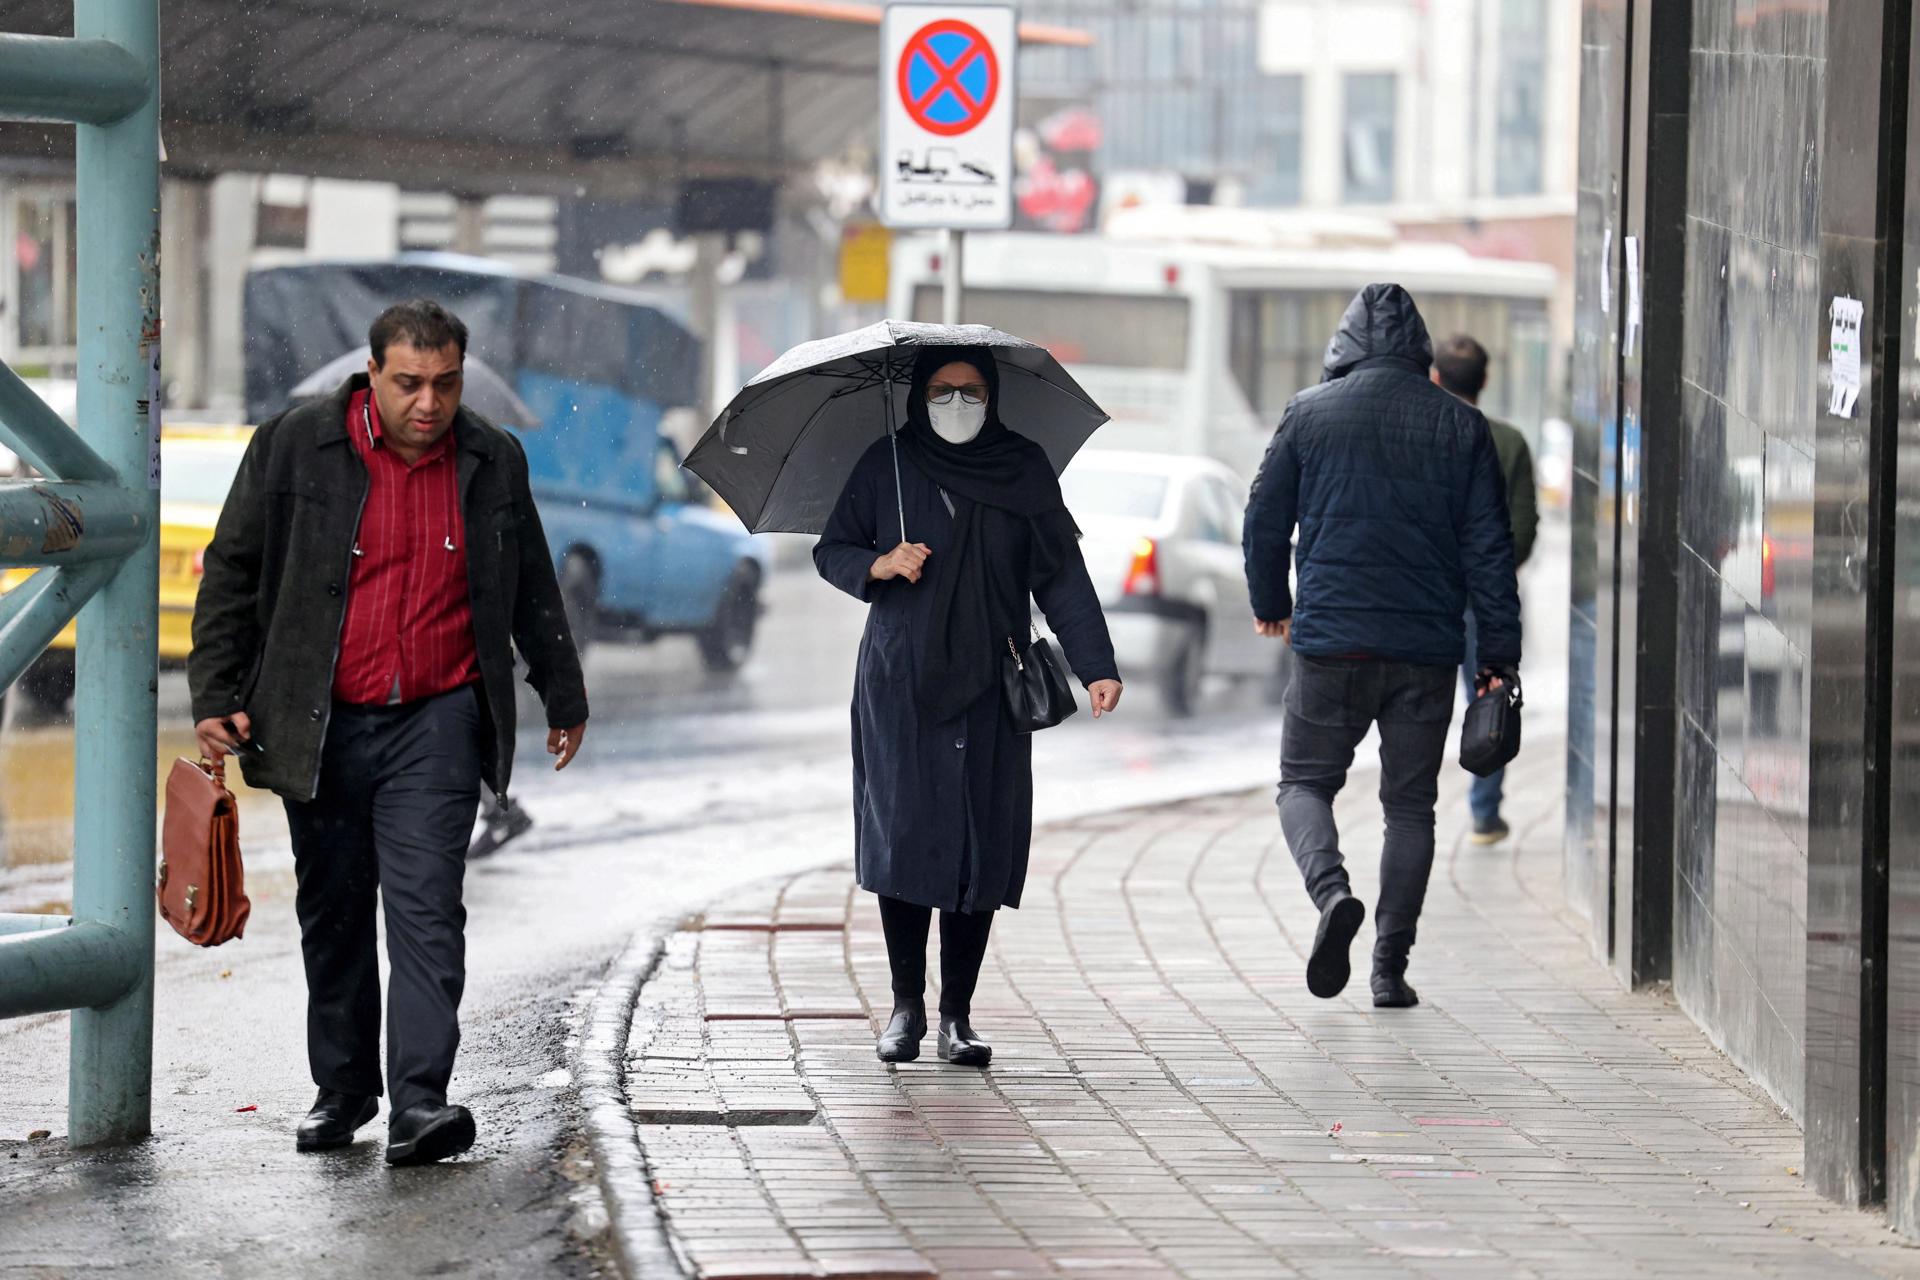 Teherán (República Islámica de Irán), 04/12/2022.- Una mujer camina por una calle en un día lluvioso en Teherán, Irán, 04 de diciembre de 2022. (Protestas, Teherán) EFE/EPA/STRINGER.